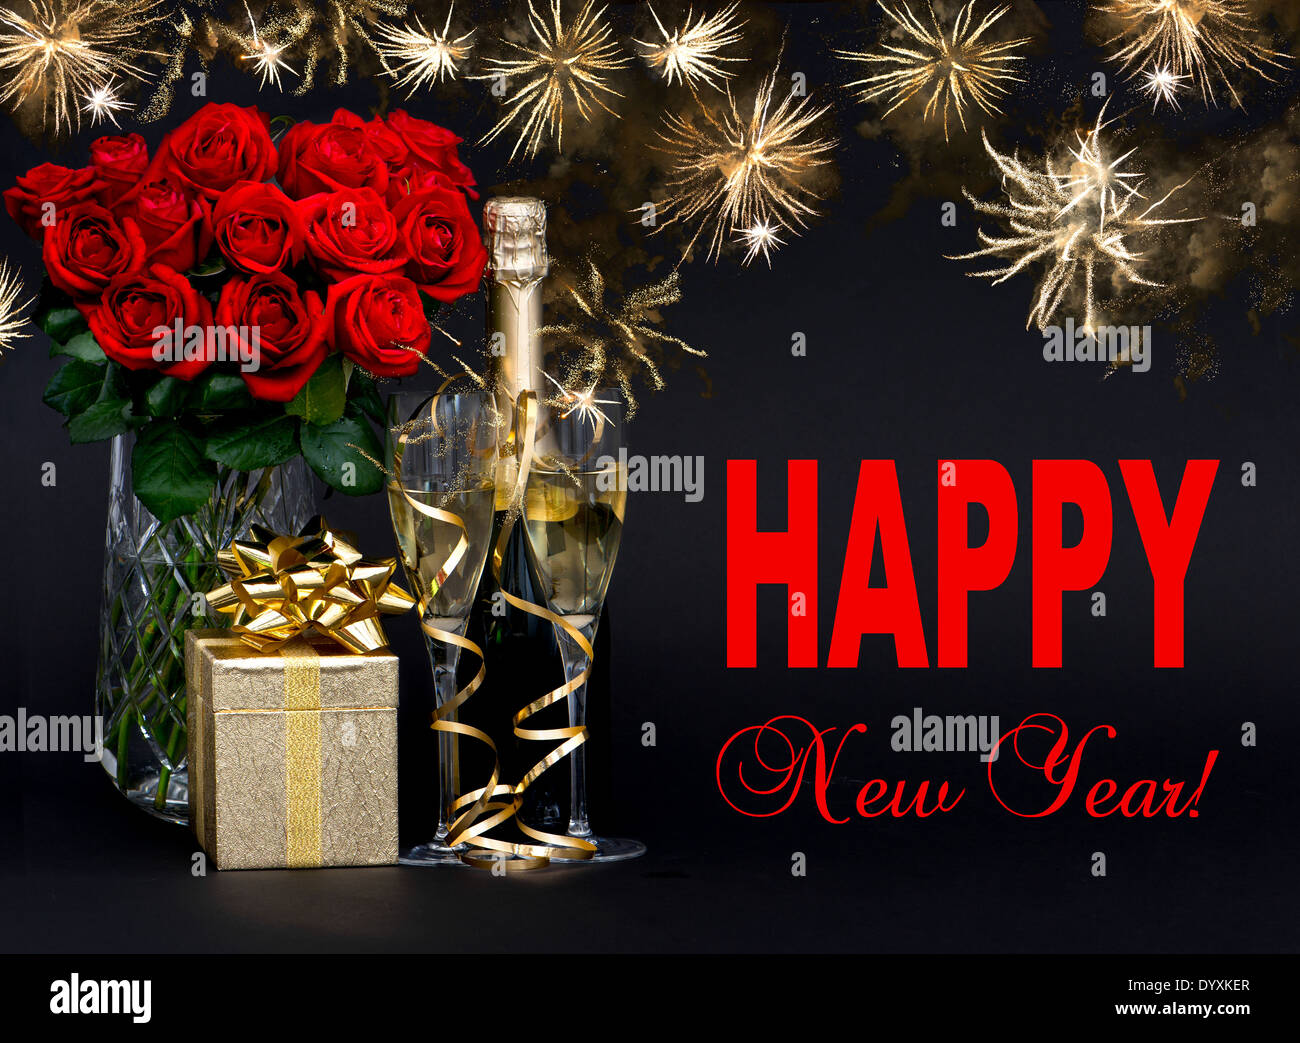 Bonne Année ! Concept de carte. roses rouges, bouteille de champagne, avec de beaux cadeaux d'artifice d'or sur fond noir Banque D'Images